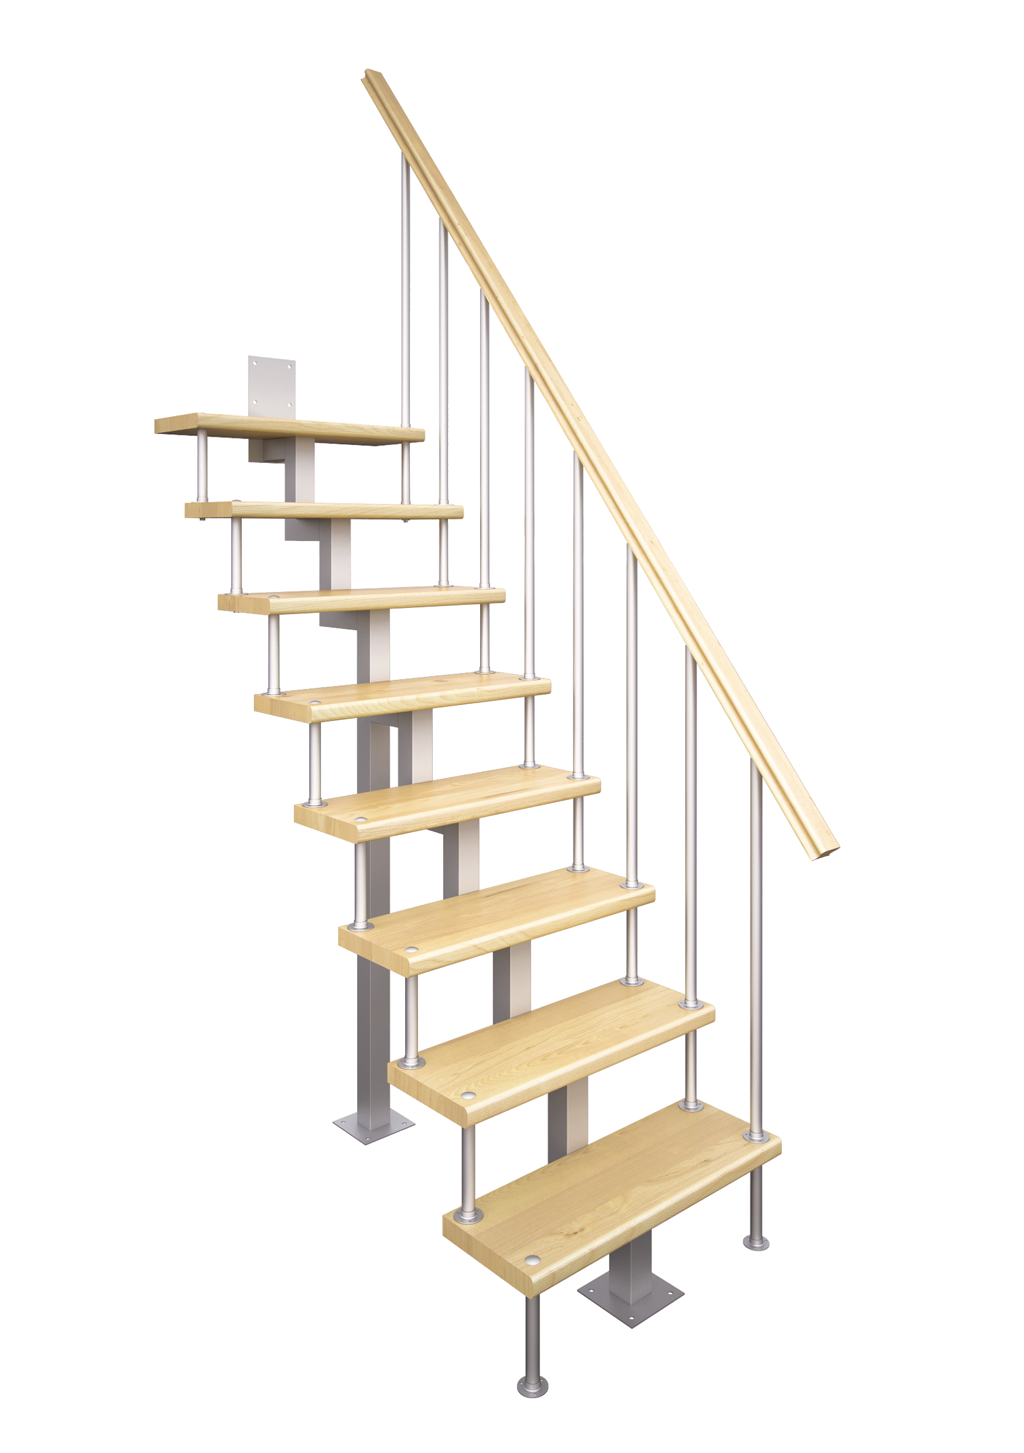 Модульная лестница на второй этаж купить - подробно